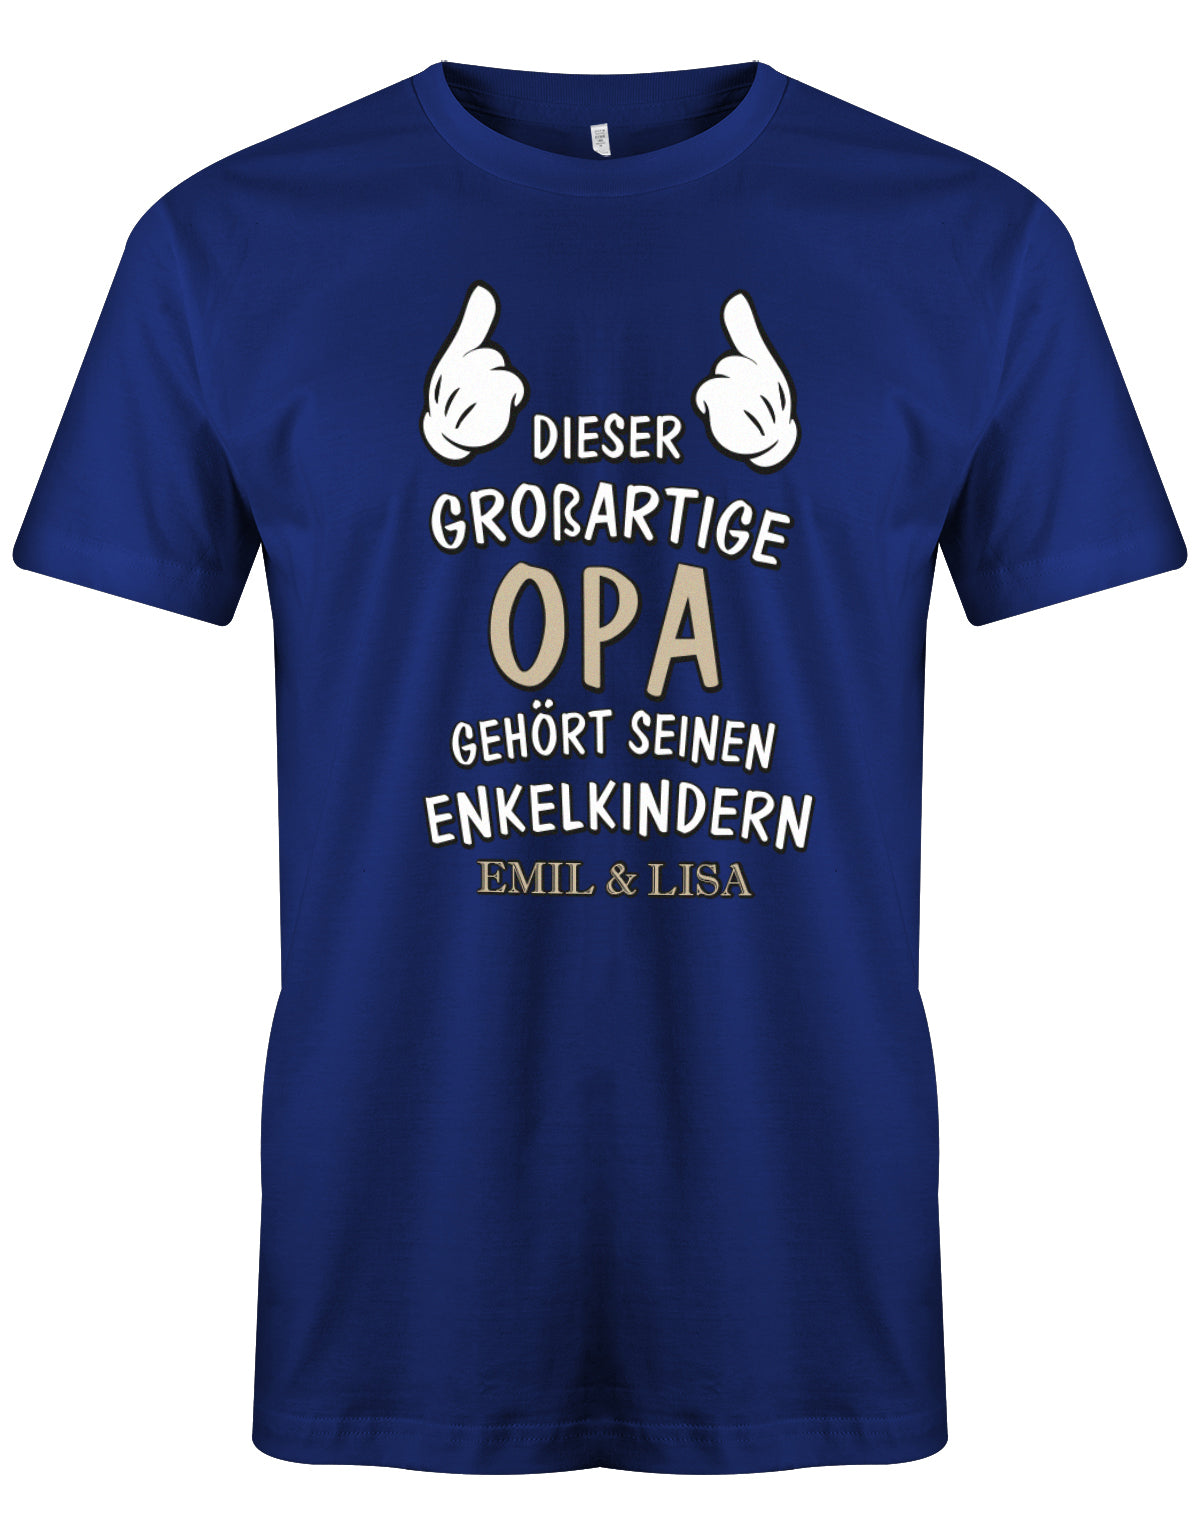 Opa Shirt personalisiert - Dieser großartige Opa gehört seinen Enkelkindern. Mit Namen der Enkel. Royalblau